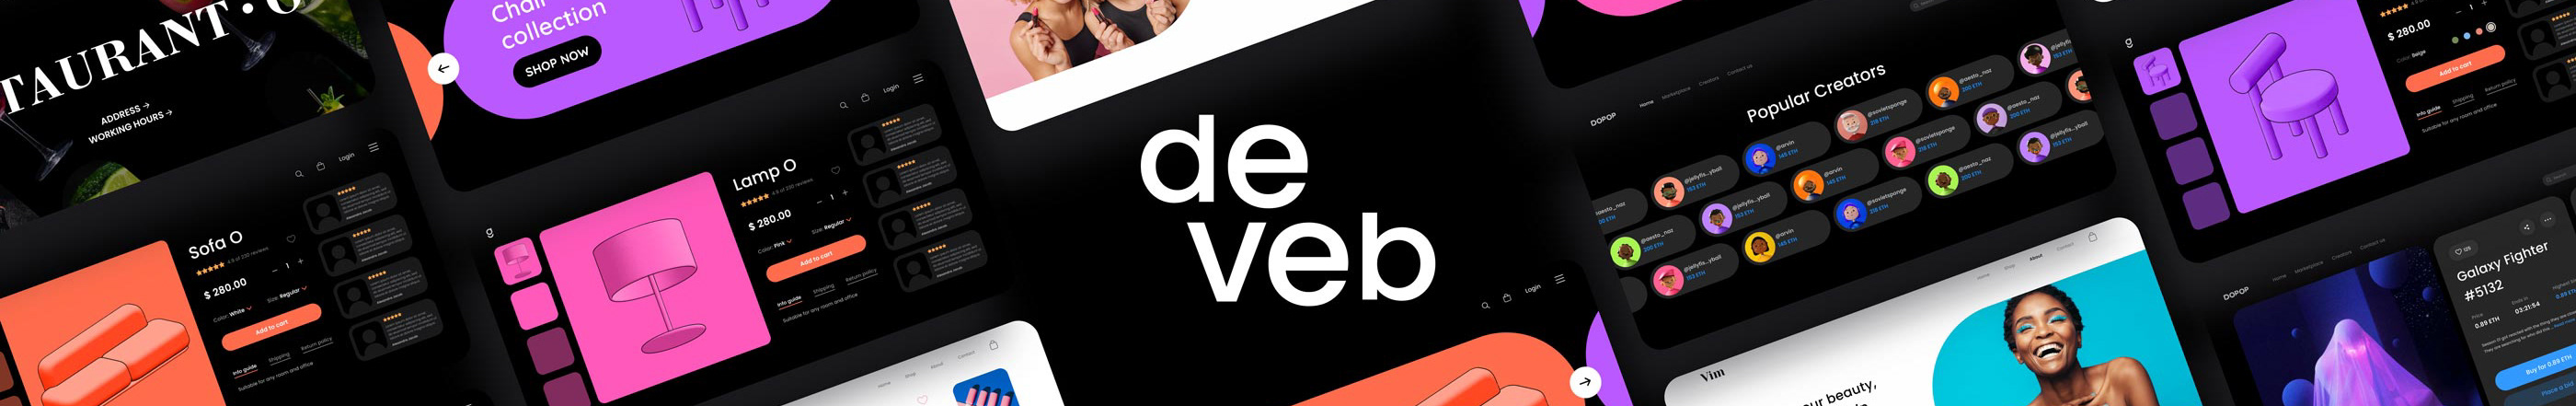 Deveb .co's profile banner